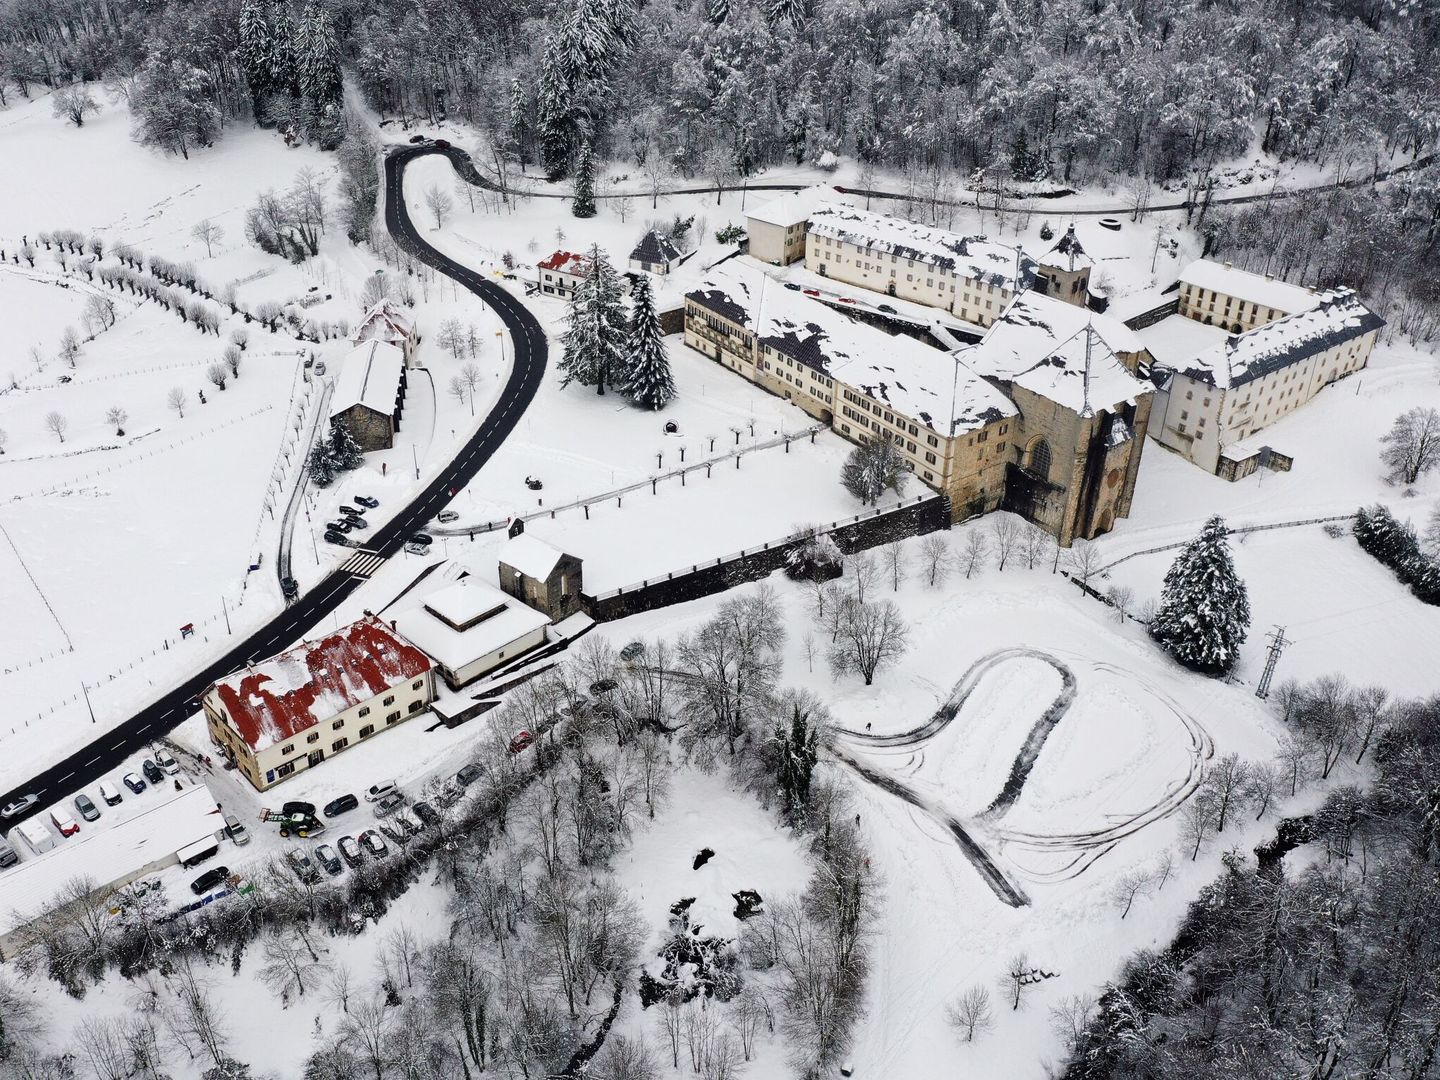 Imagen tomada desde un dron de la Colegiata de Roncesvalles cubierta de nieve tras los últimos temporales que han afectado a la zona. (EFE/Jesús Diges)